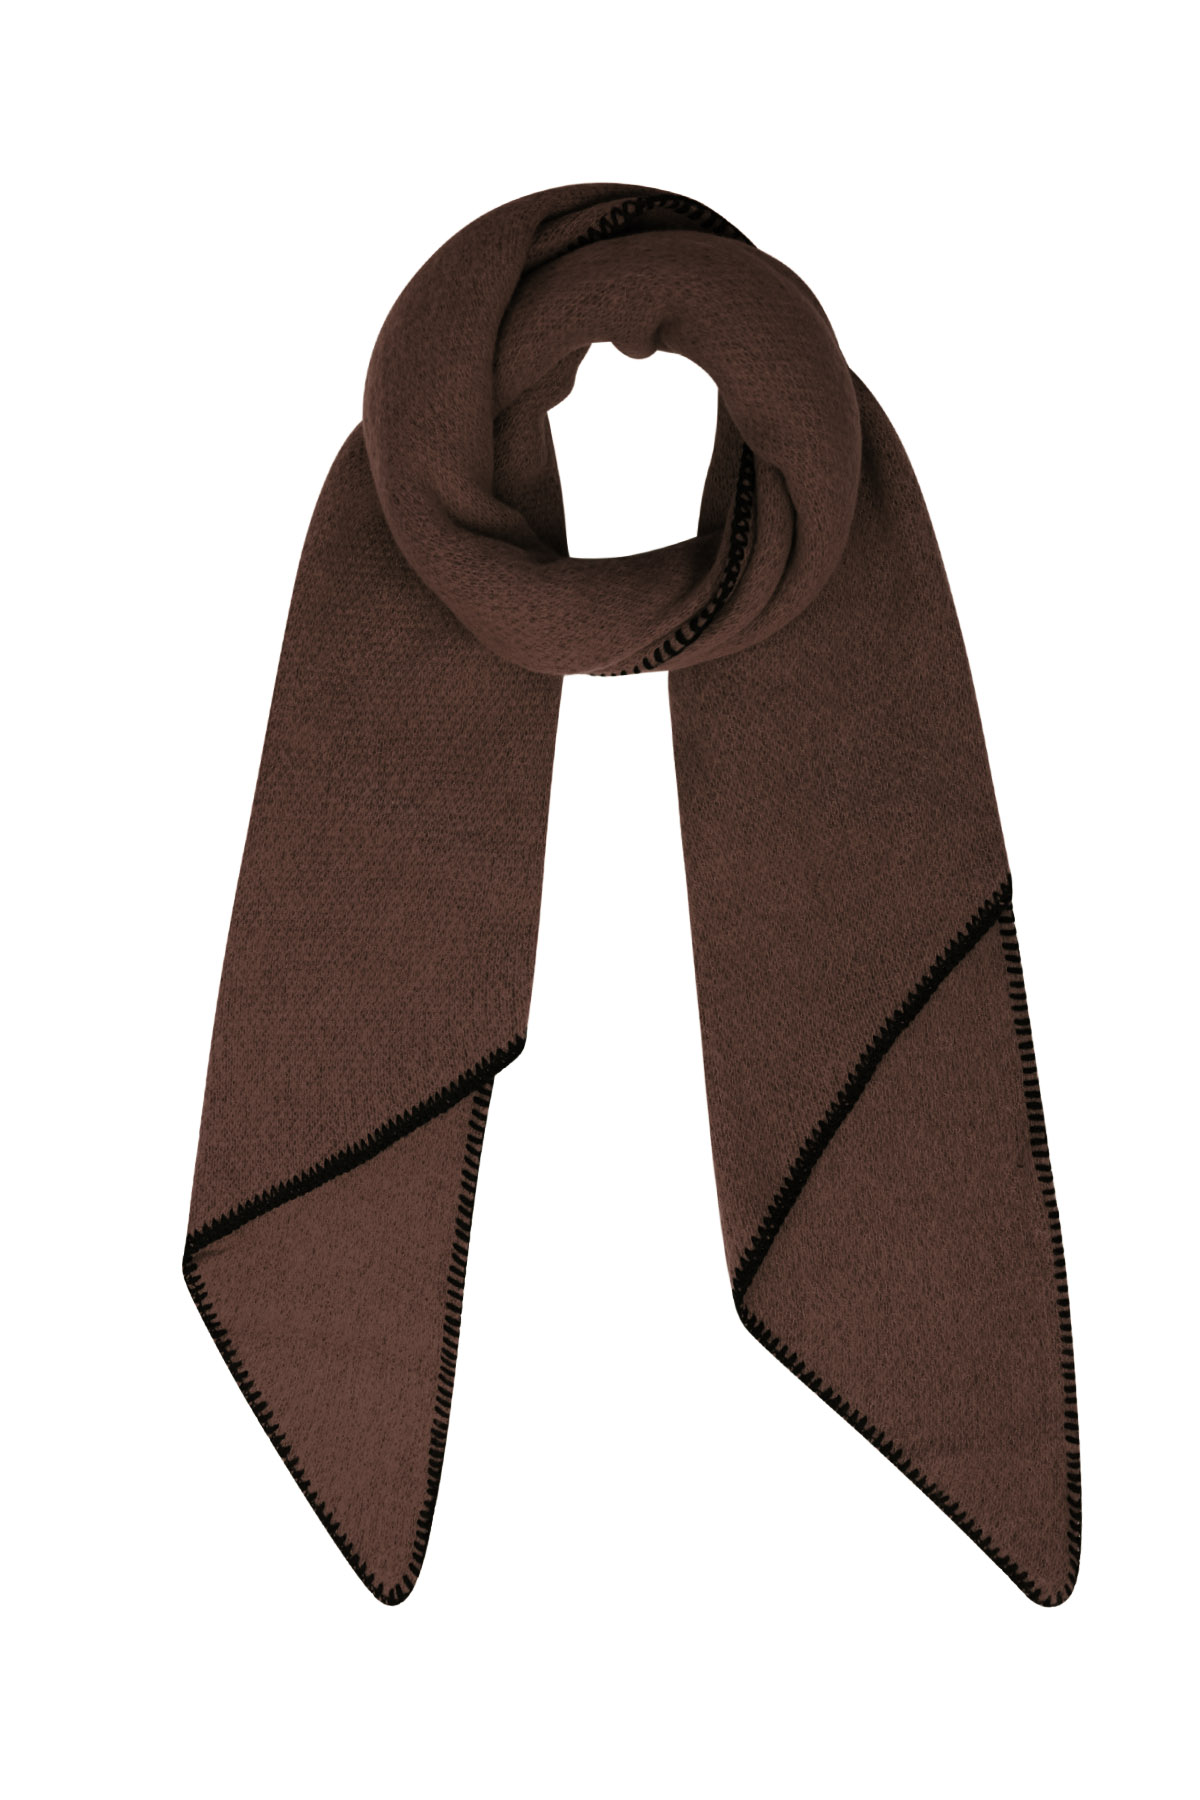 Bufanda de invierno monocolor con costuras negras - marrón